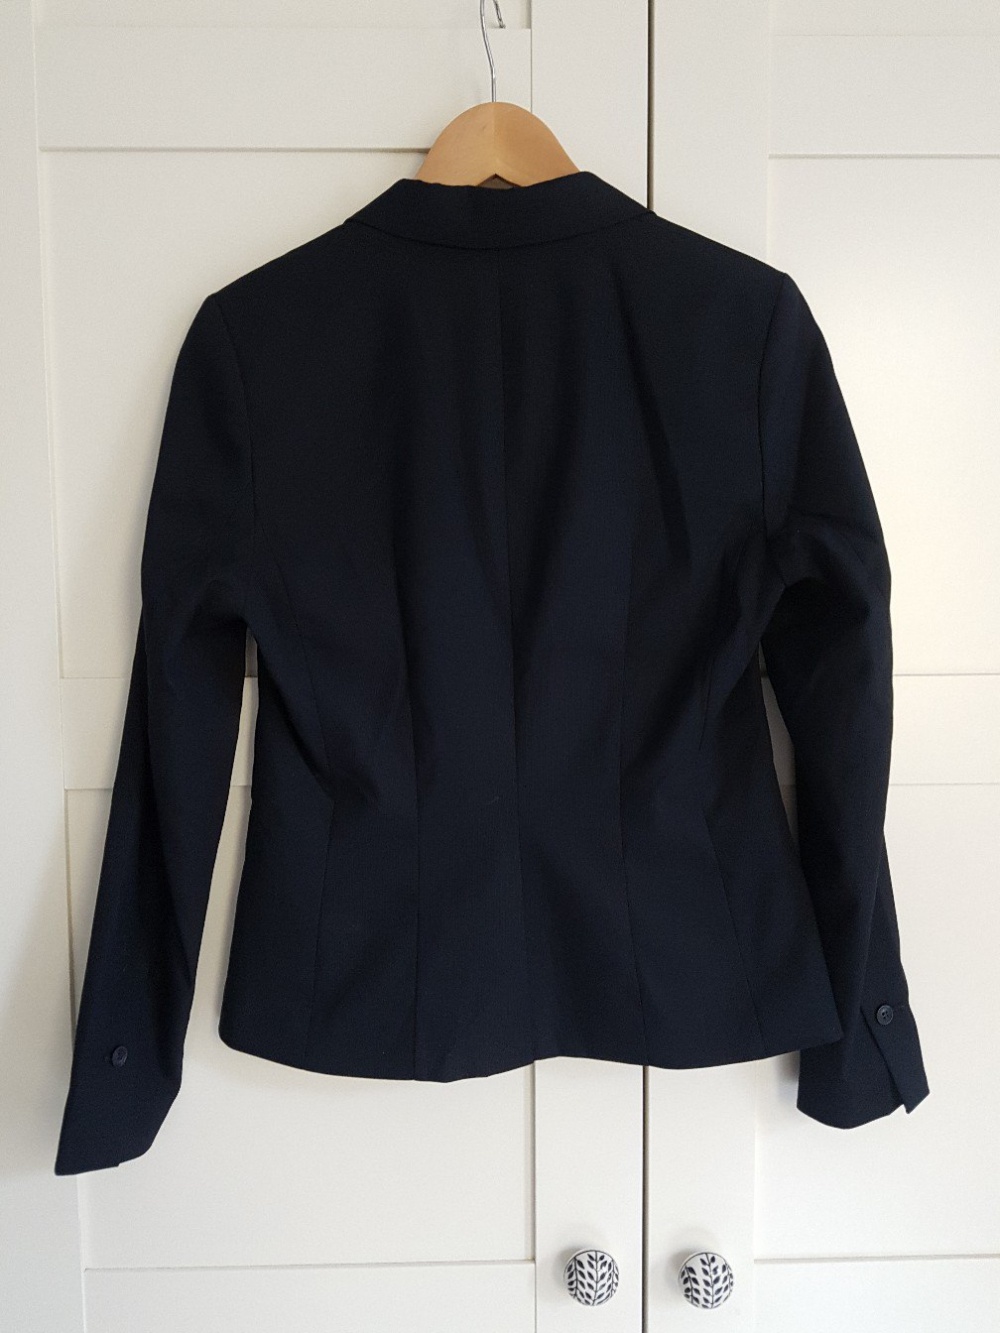 Пиджак HM приталенный, размер 36